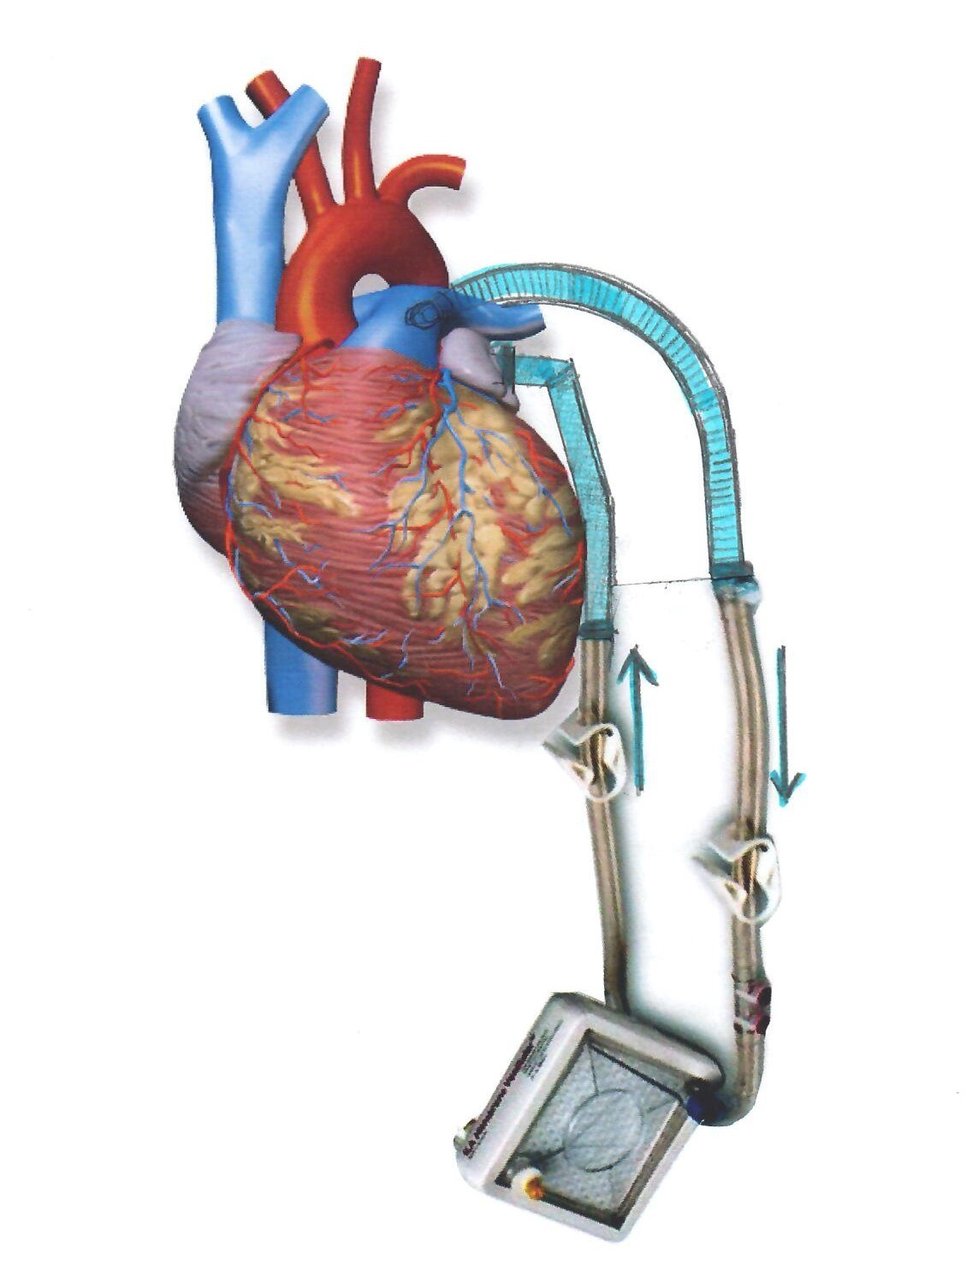 Princip operace spočívá ve vytvoření obchvatu mezi hlavní plicní tepnou, která vede krev ze srdce do plic, a levou síní, kam za normálních okolností přitéká okysličená krev z plic.